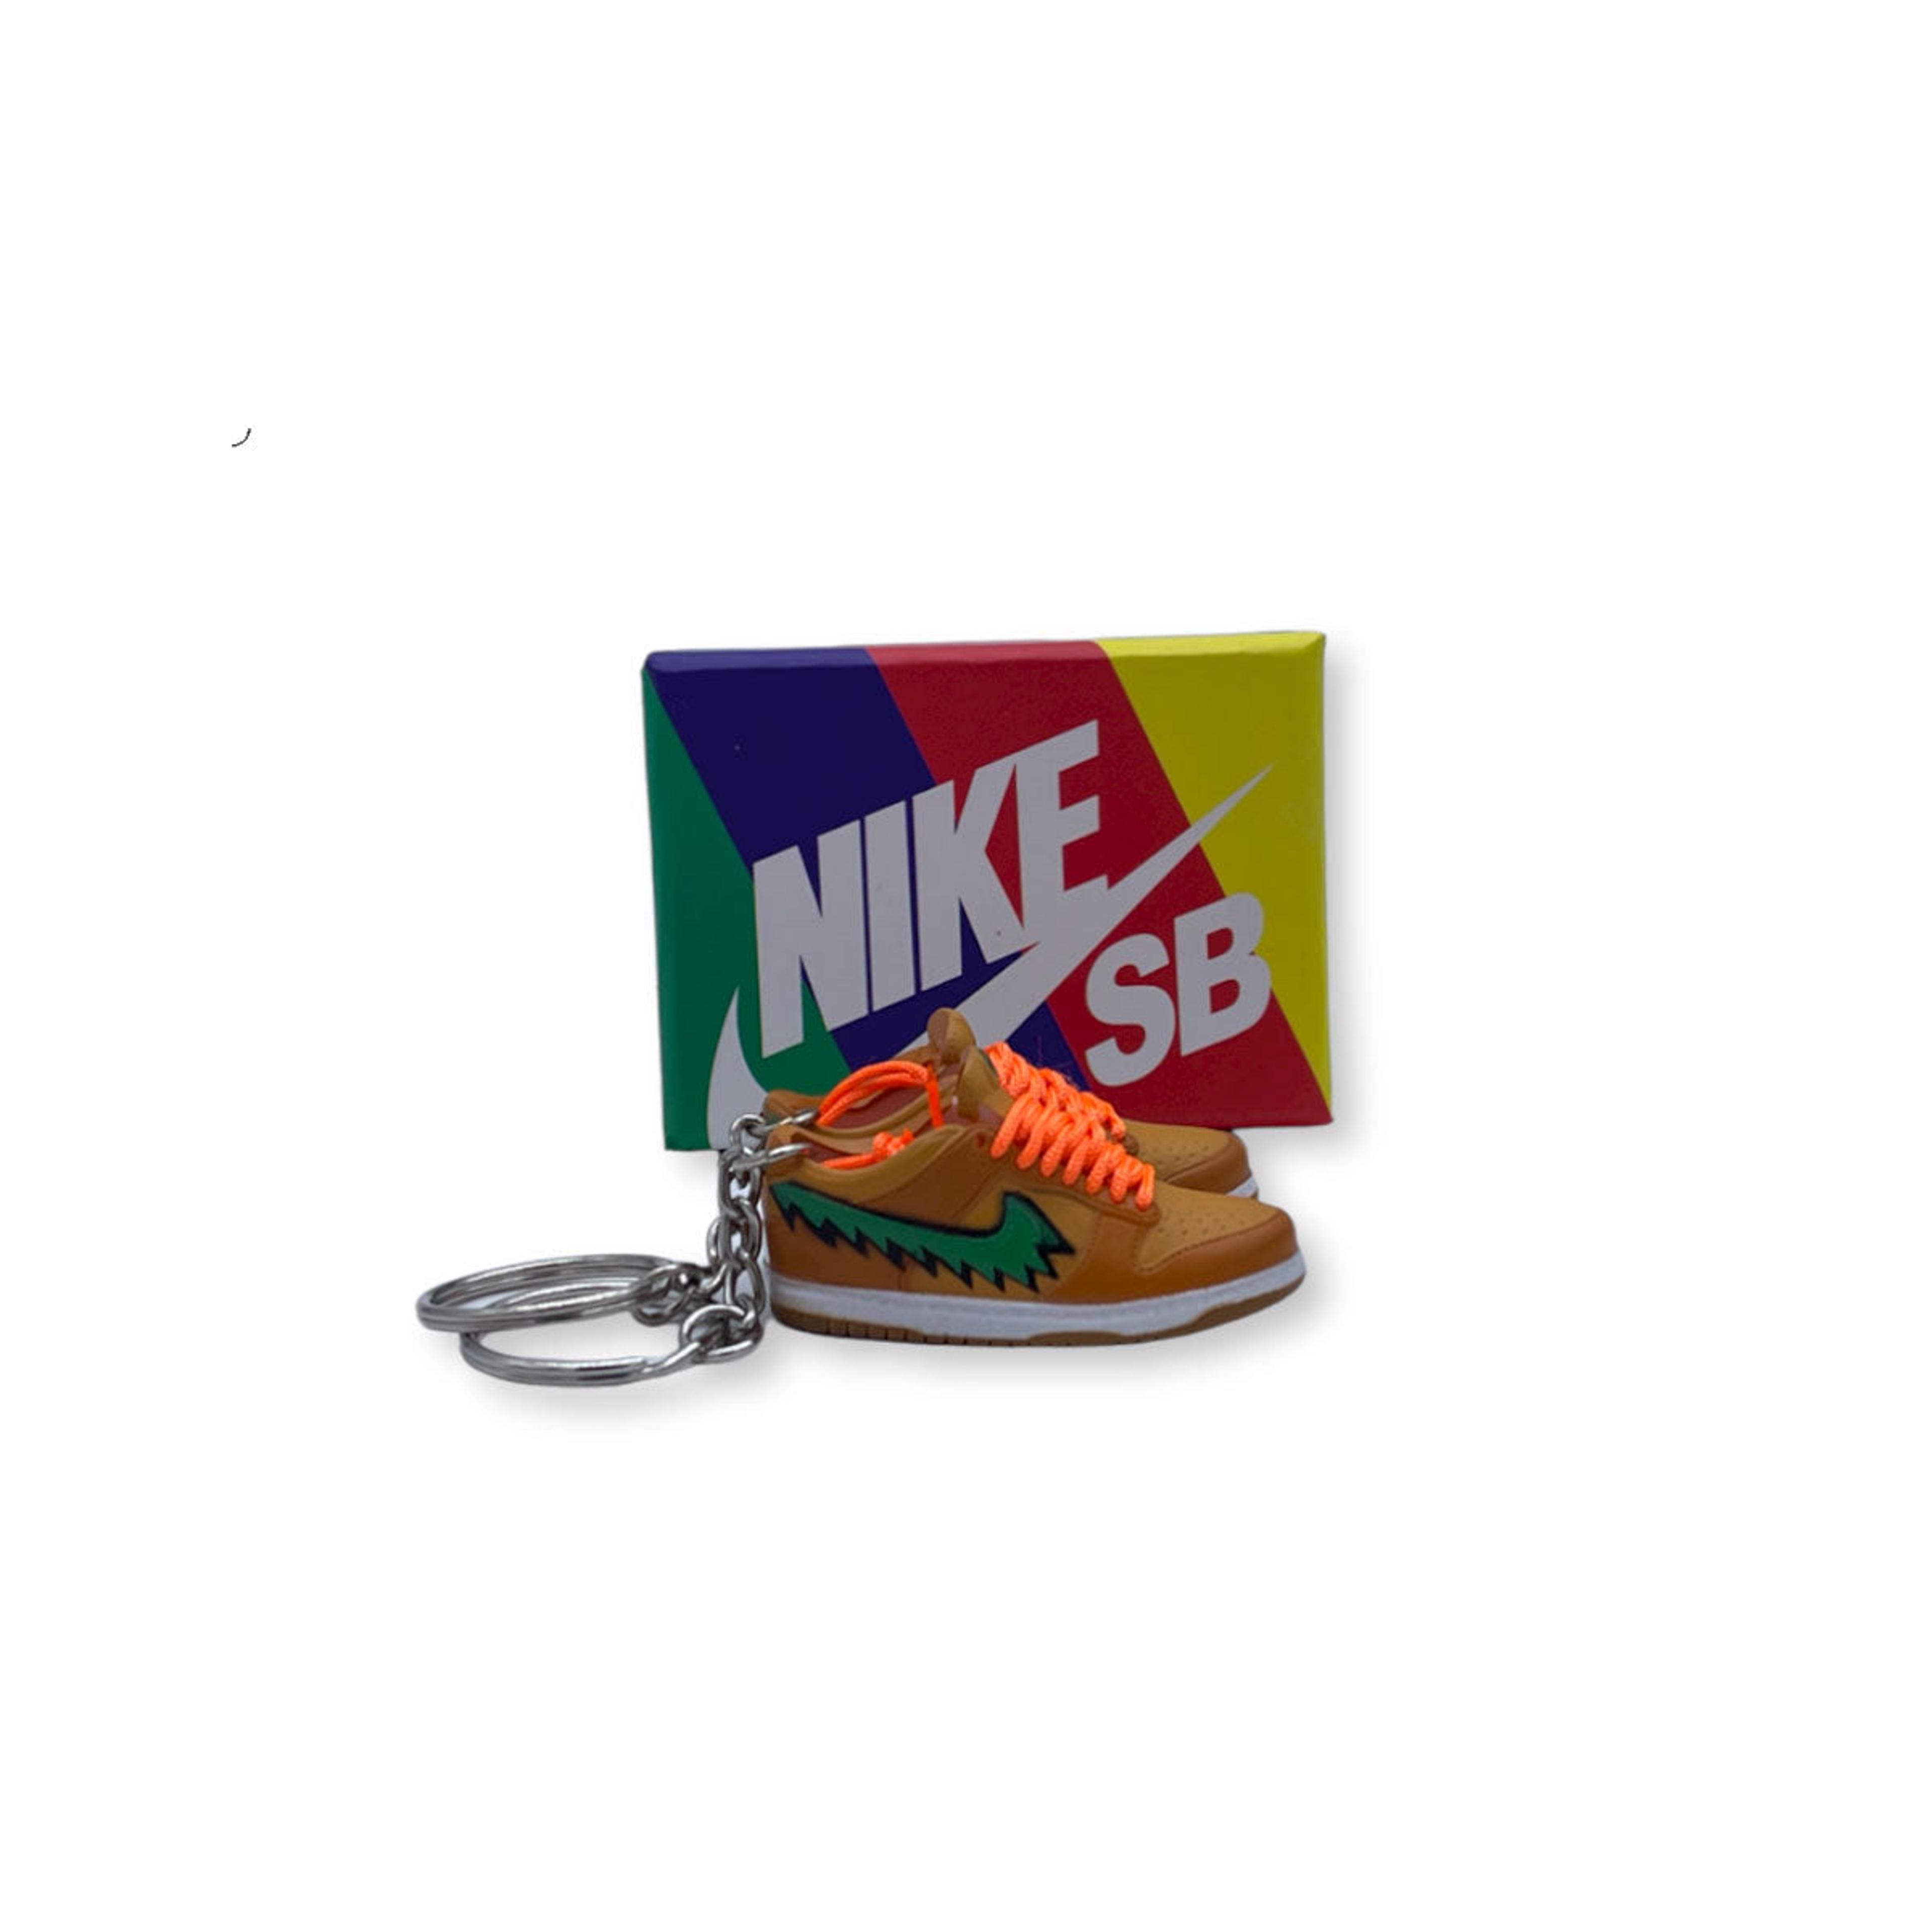 3D Sneaker Keychain- Nike SB Dunk Low Grateful Dead Bears Orange